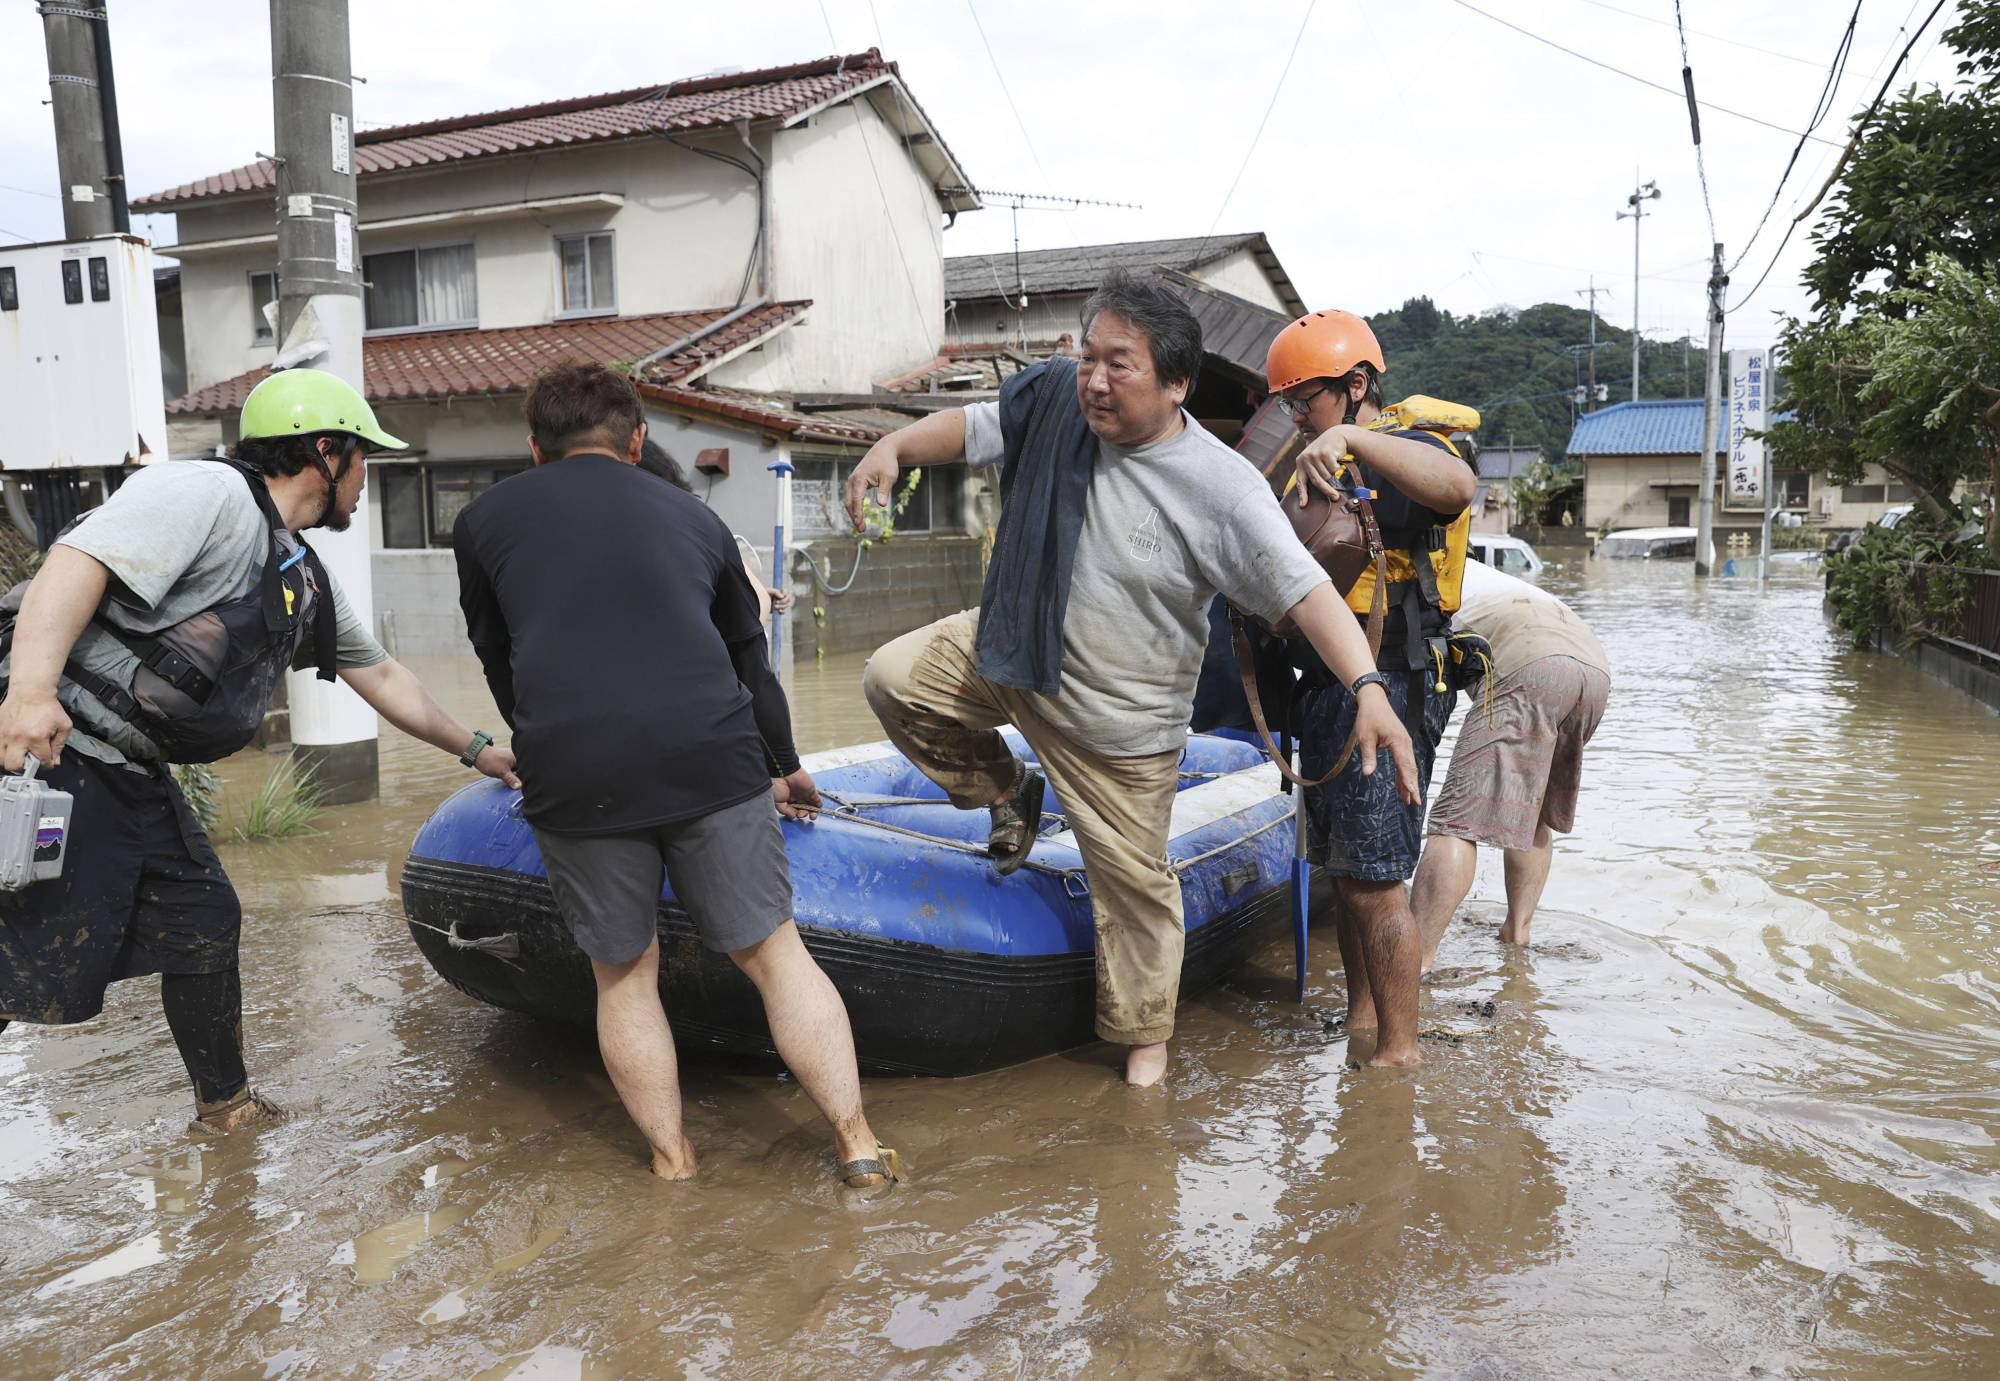 Chùm ảnh lũ lụt nhấn chìm viện dưỡng lão, nuốt chửng nhà dân khiến ít nhất 20 người thiệt mạng ở Nhật Bản - Ảnh 7.